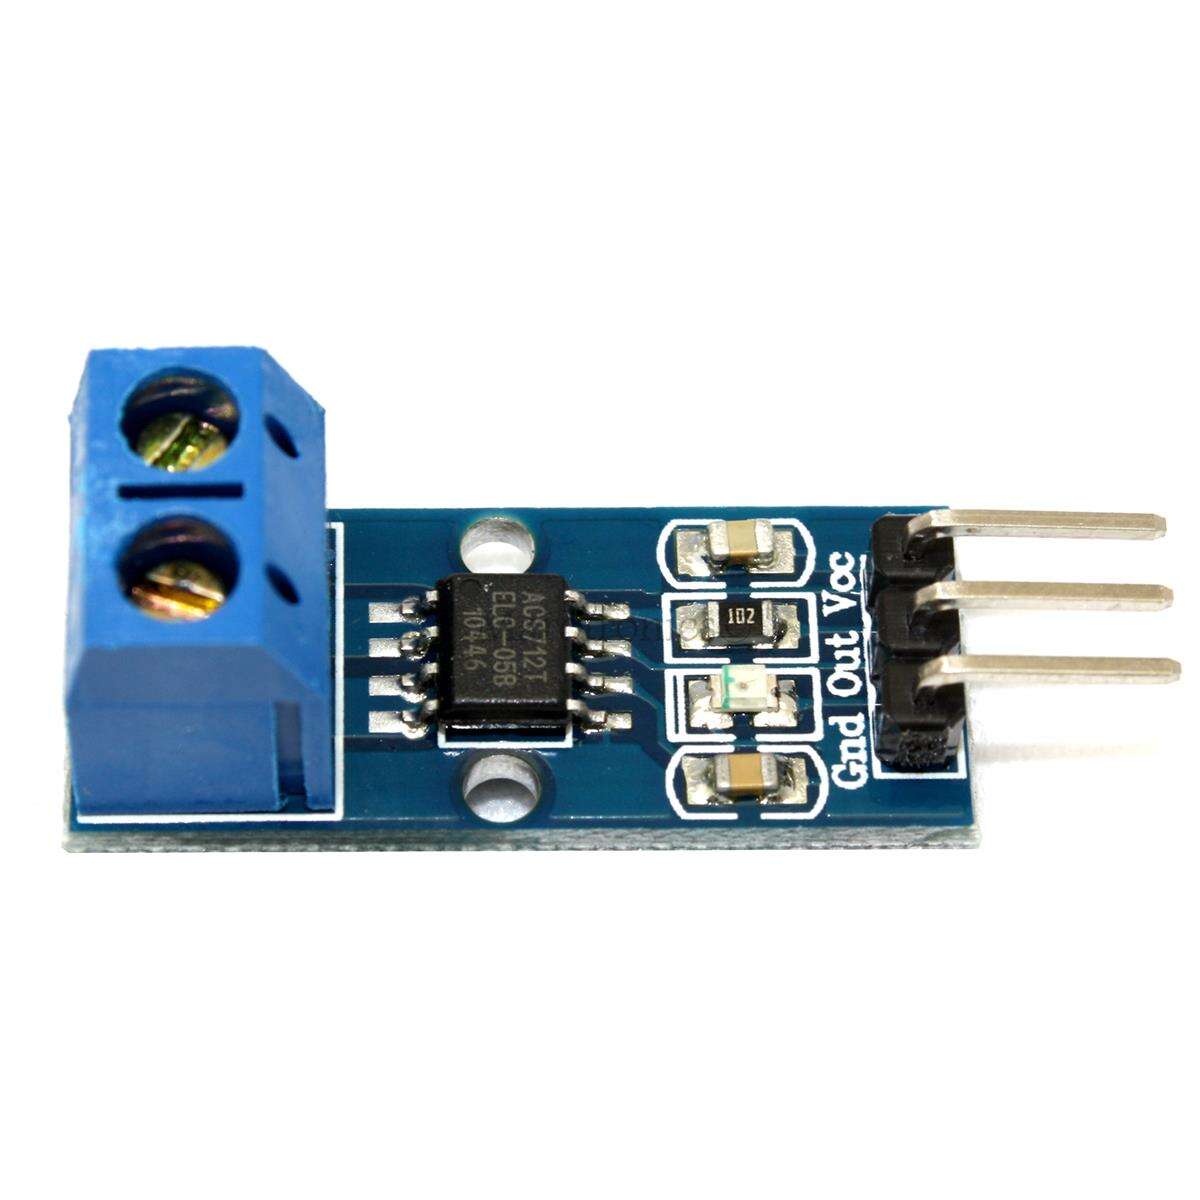 ACS712-5A Stromsensor Analog Current Hall Sensor Arduino Raspberry Pi 